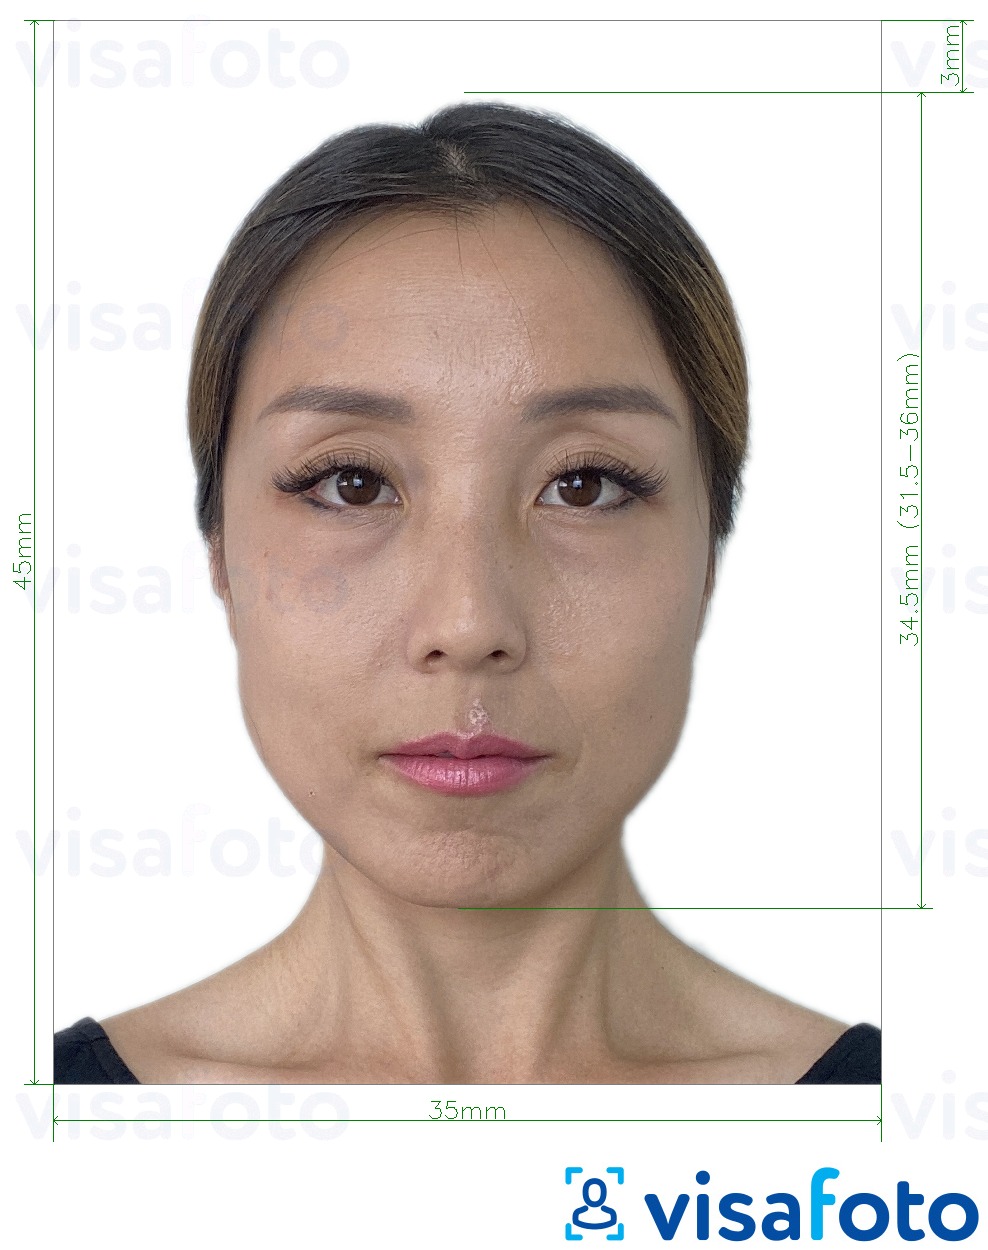 نمونه ی یک عکس برای تایوان ویزا 35x45 میلیمتر (3.5x4.5 سانتیمتر) با مشخصات دقیق